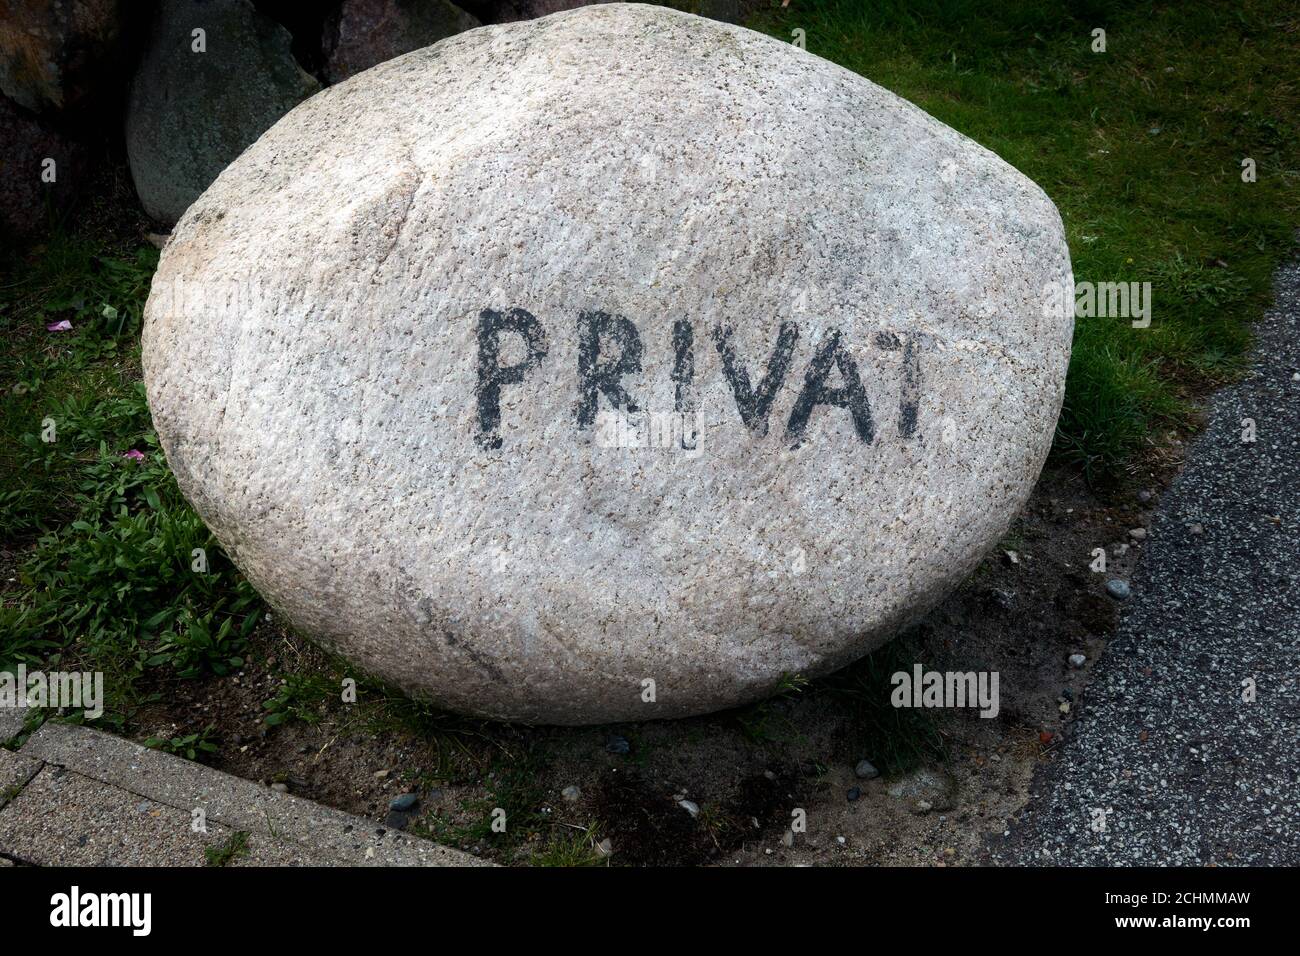 Heller Granit erratischer Block mit der verblassten Inschrift privat Markieren Sie das Ende des öffentlichen Bereichs Stockfoto